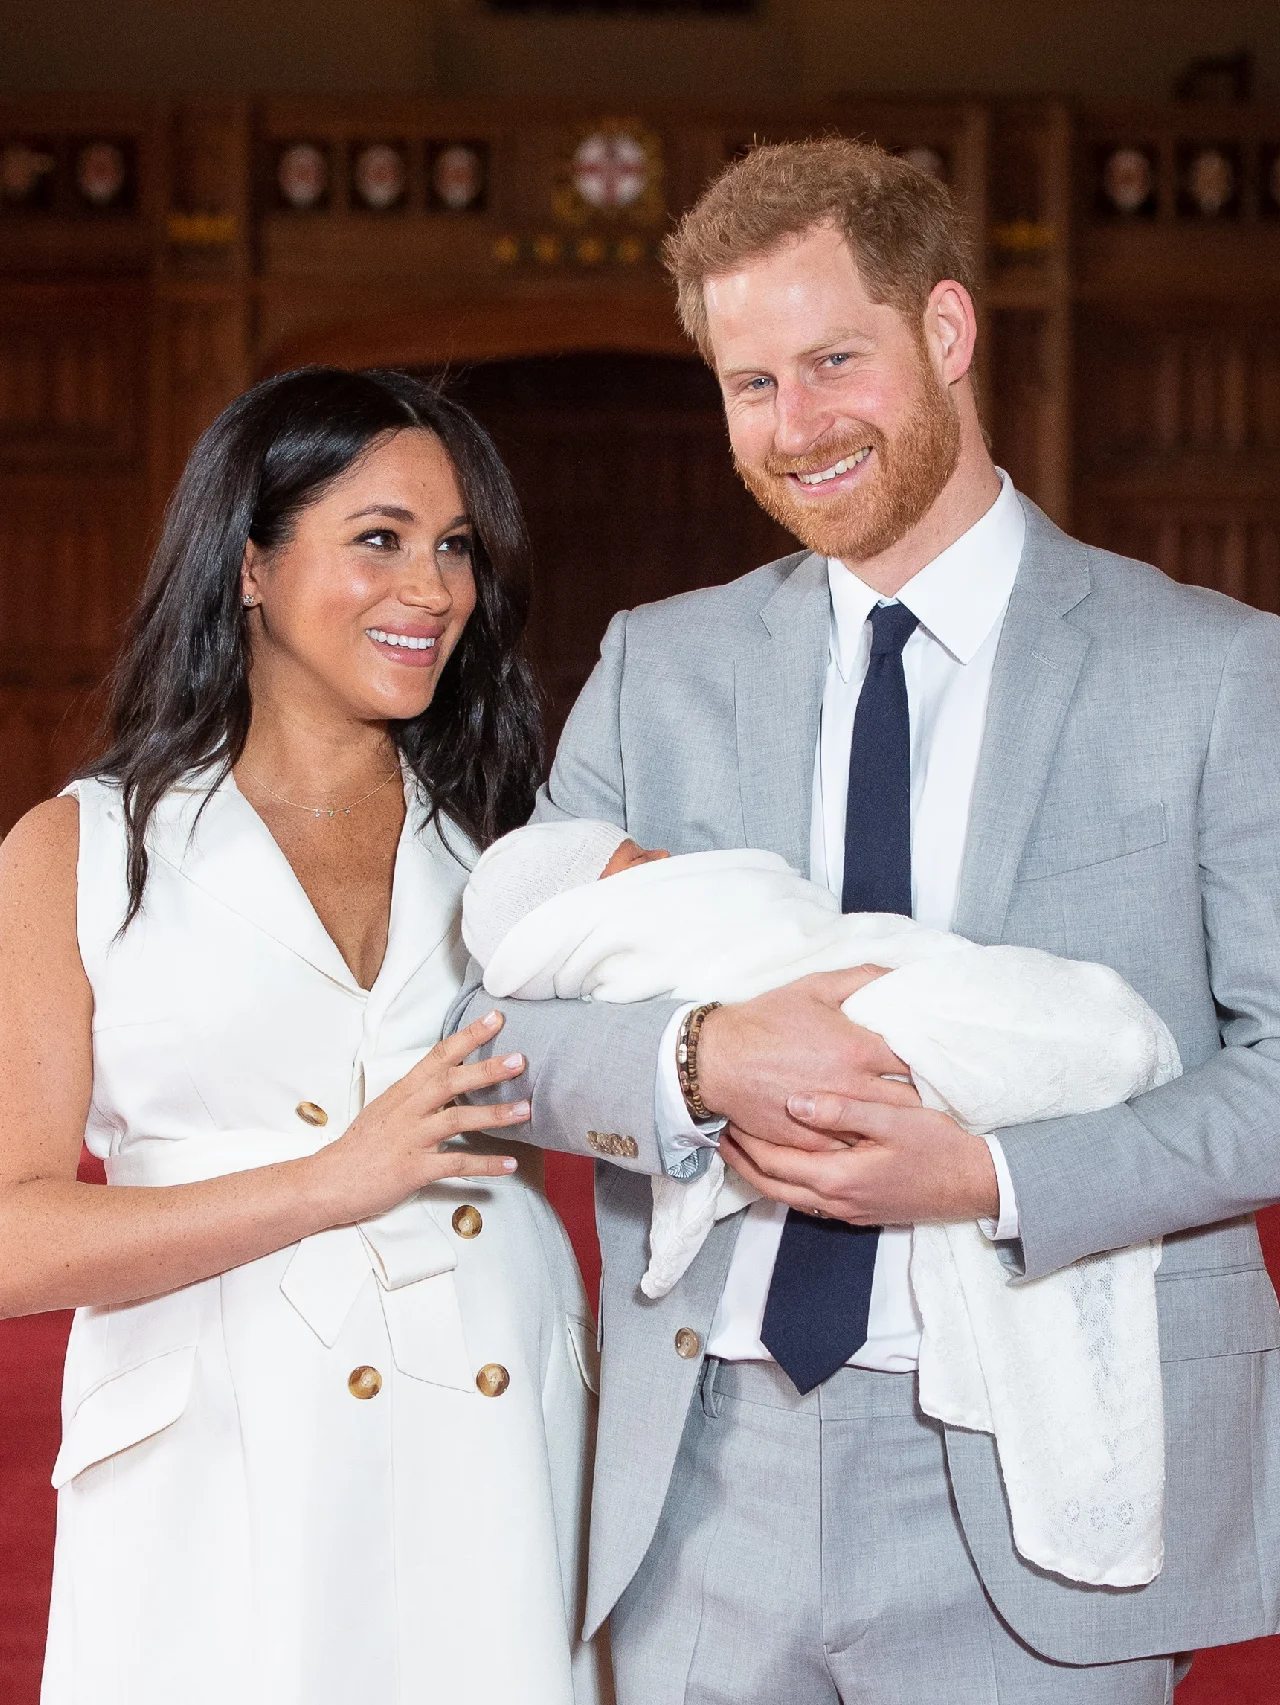 ヘンリー王子＆メーガン妃の子どもたちがプリンスとプリンセスの称号を正式に得る。「生まれながらの権利」と主張